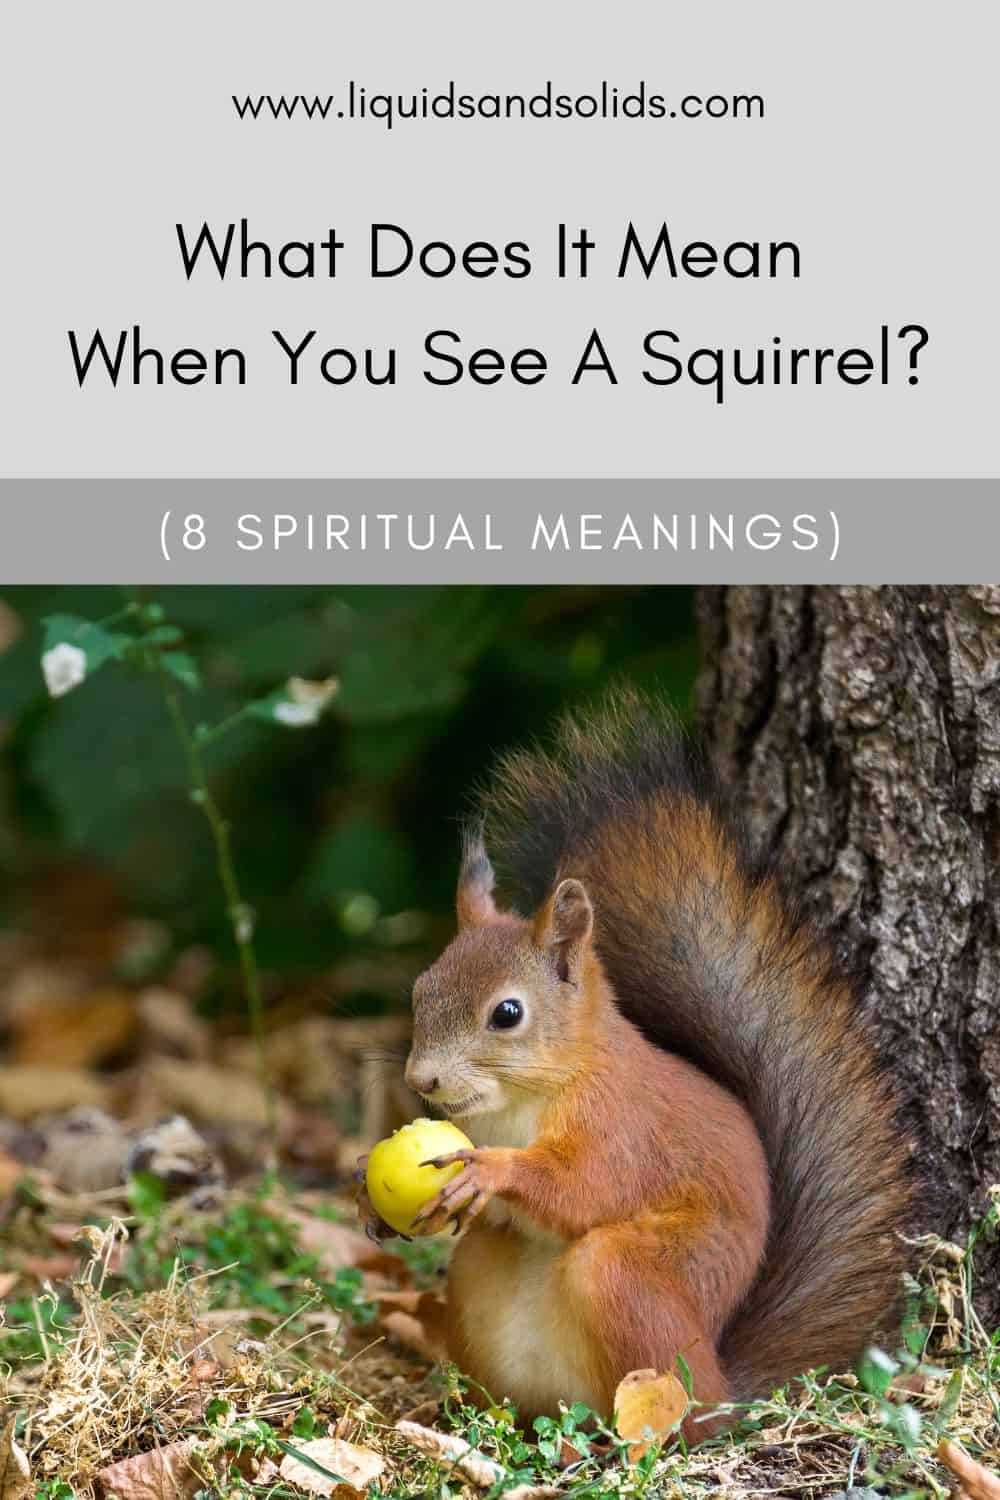  Mit jelent, ha mókust látsz? (8 spirituális jelentés)